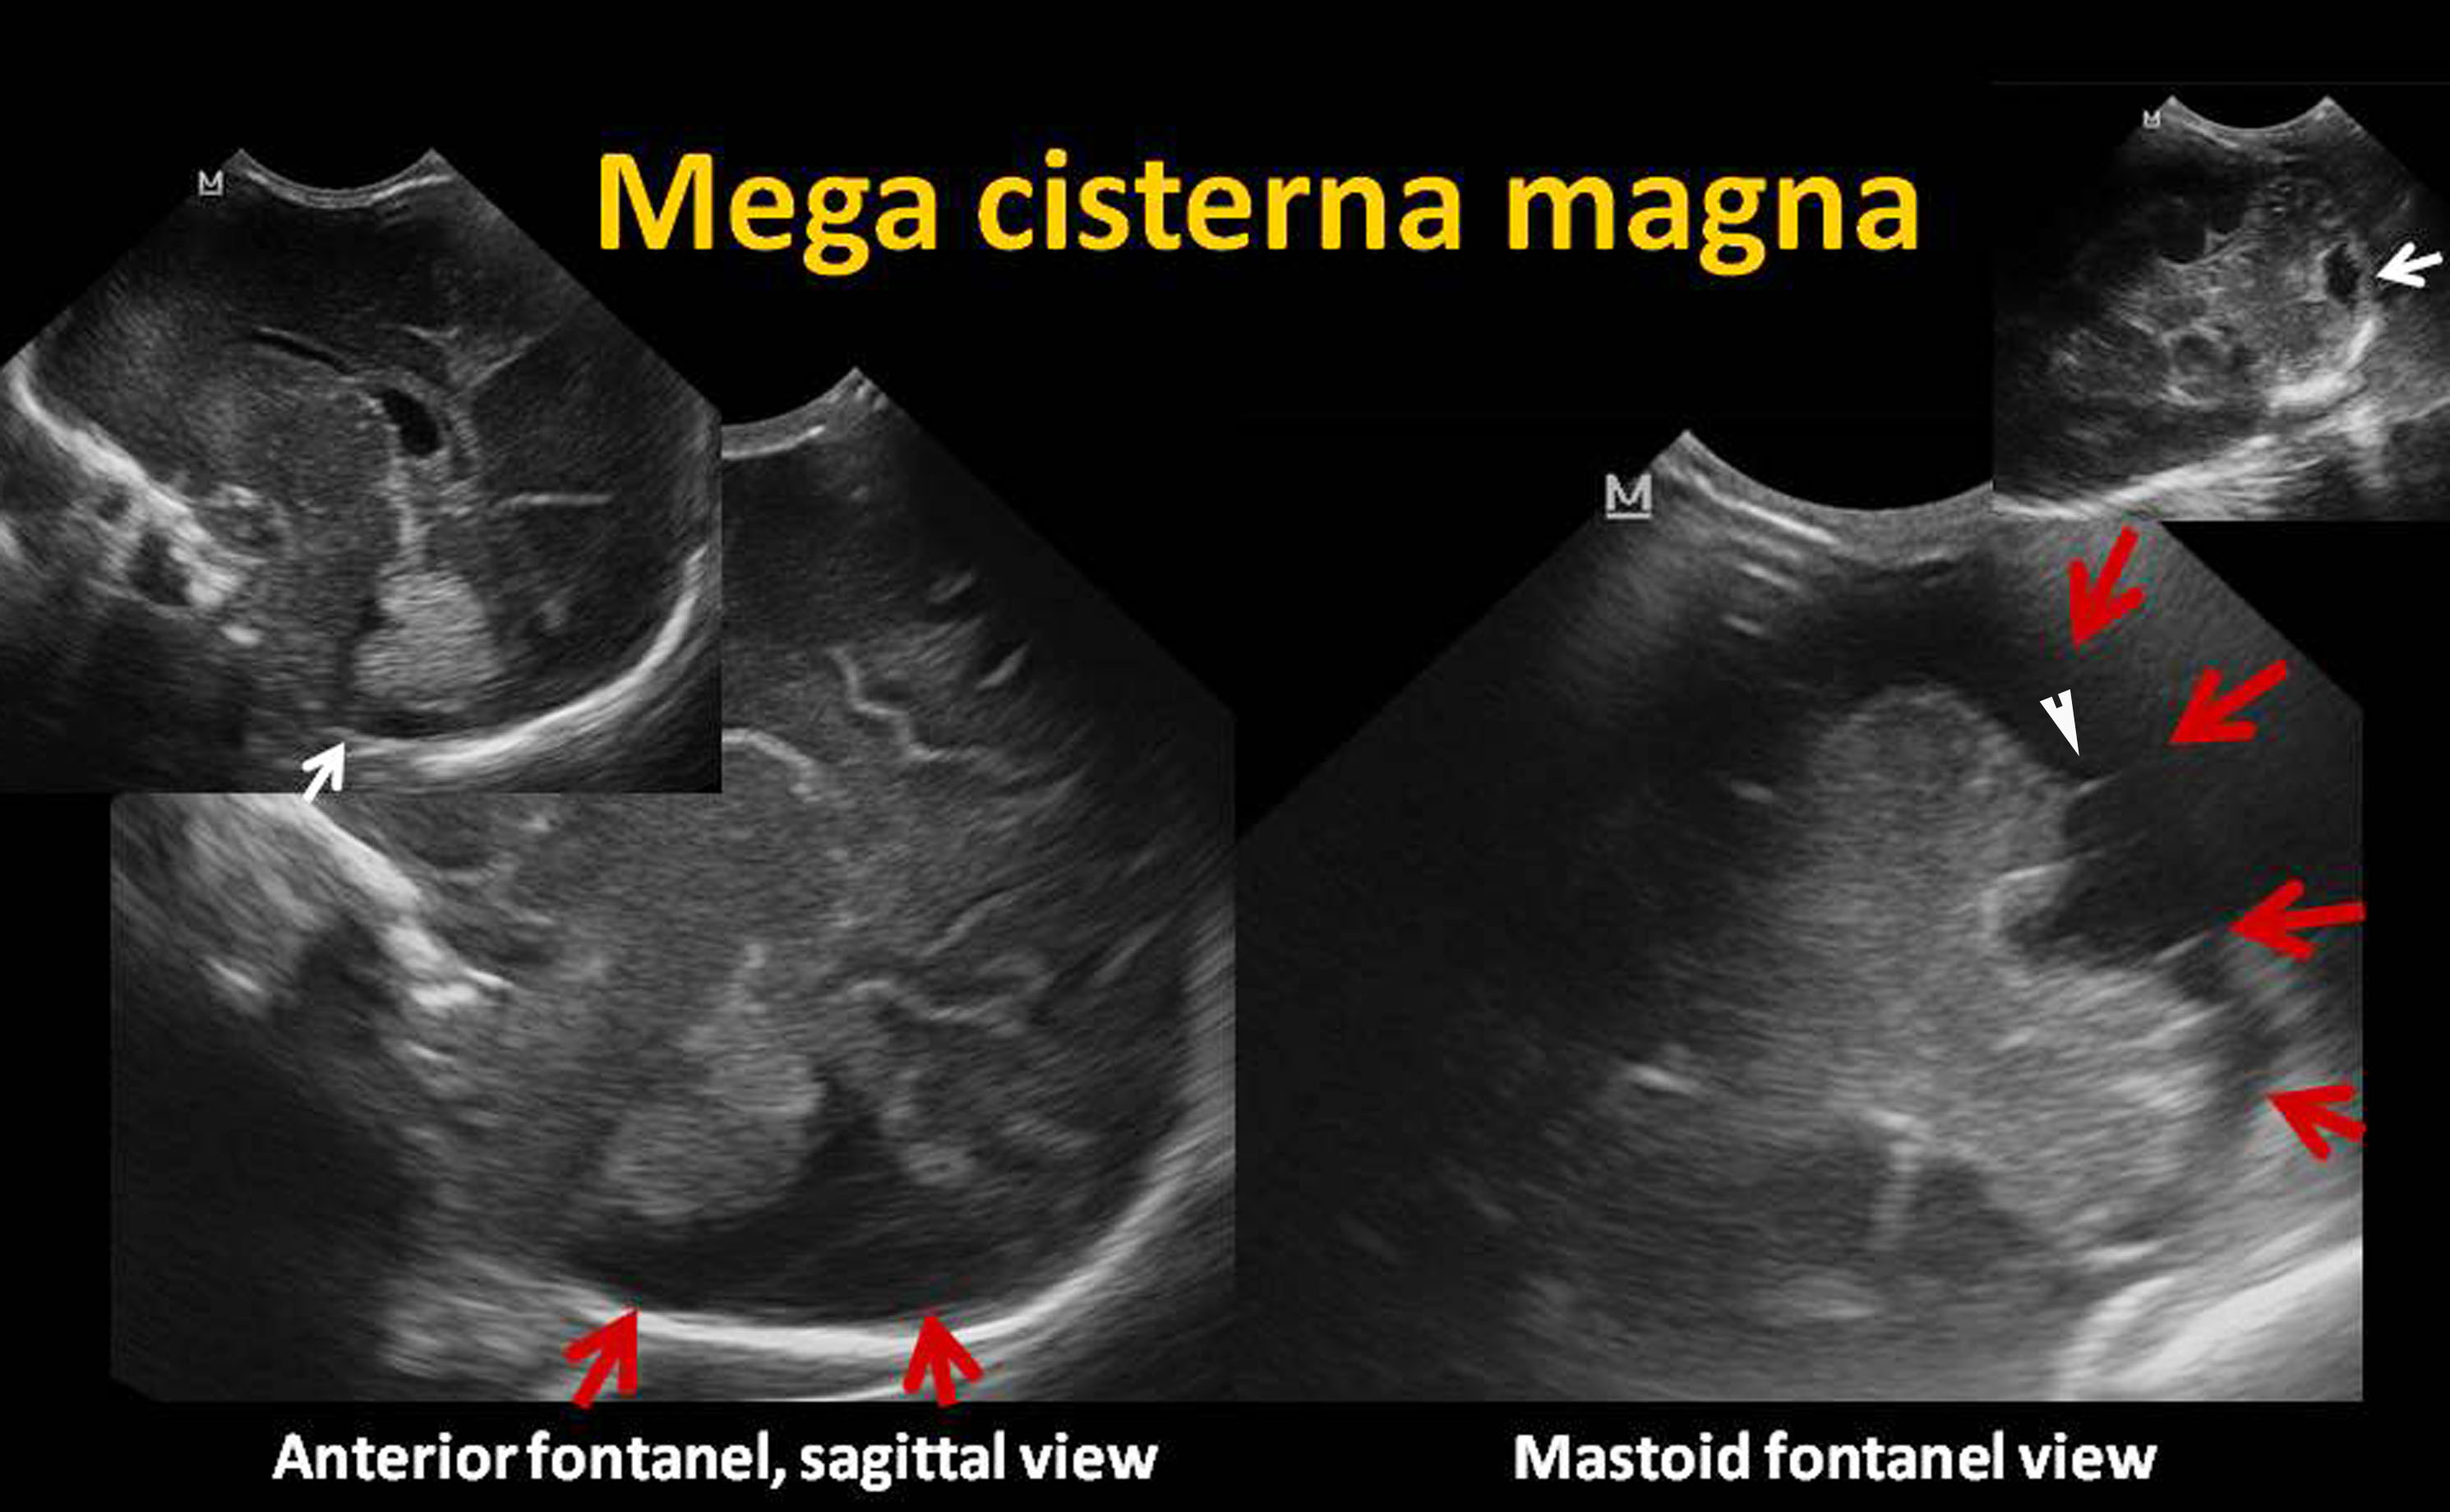 cisterna magna anatomy